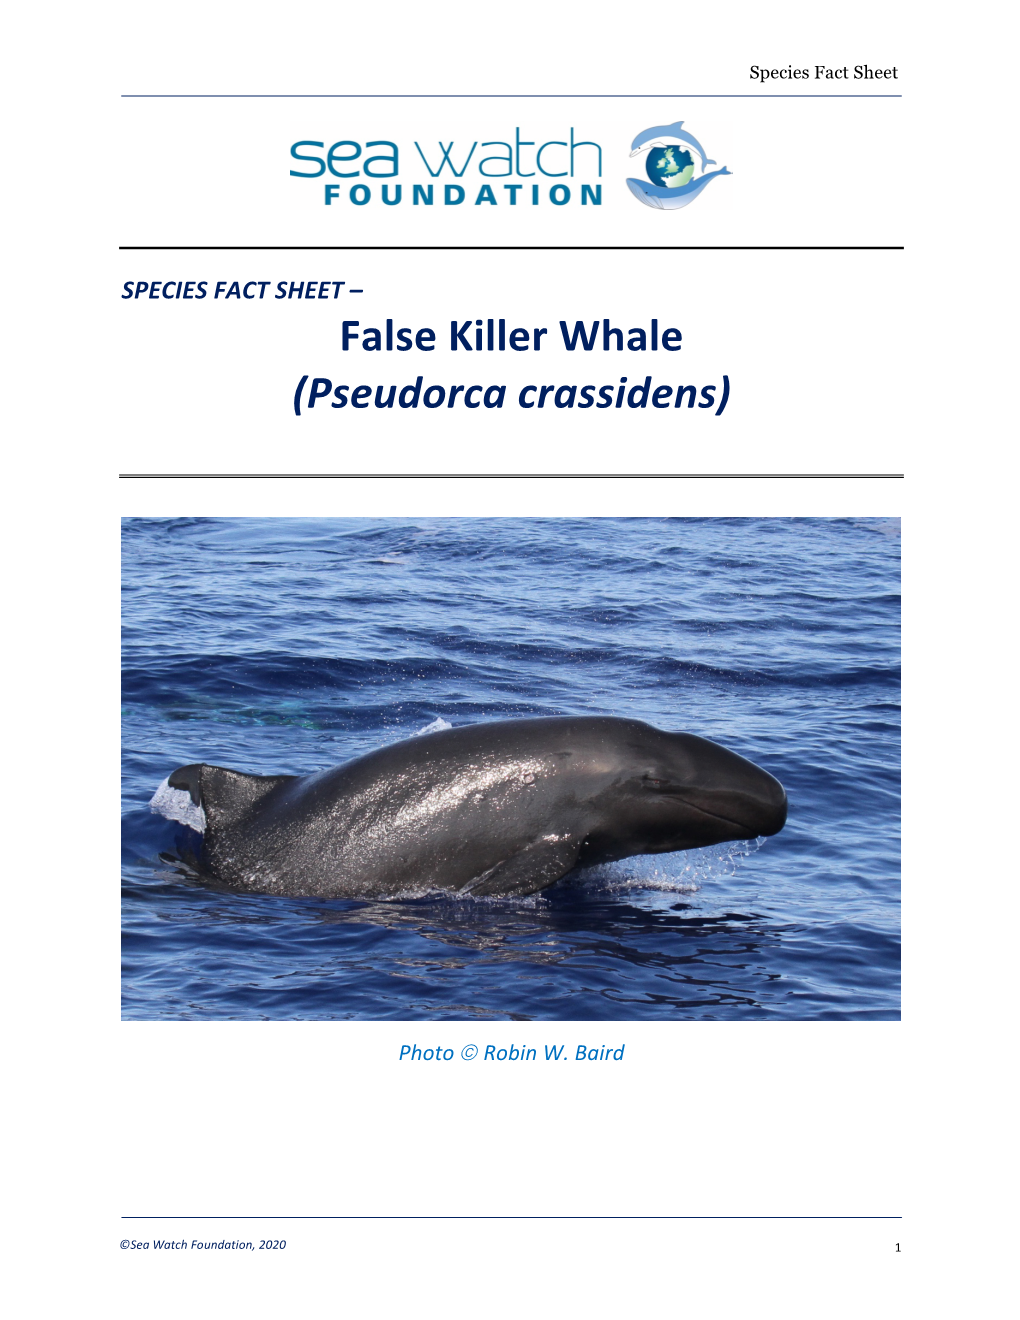 False Killer Whale (Pseudorca Crassidens)